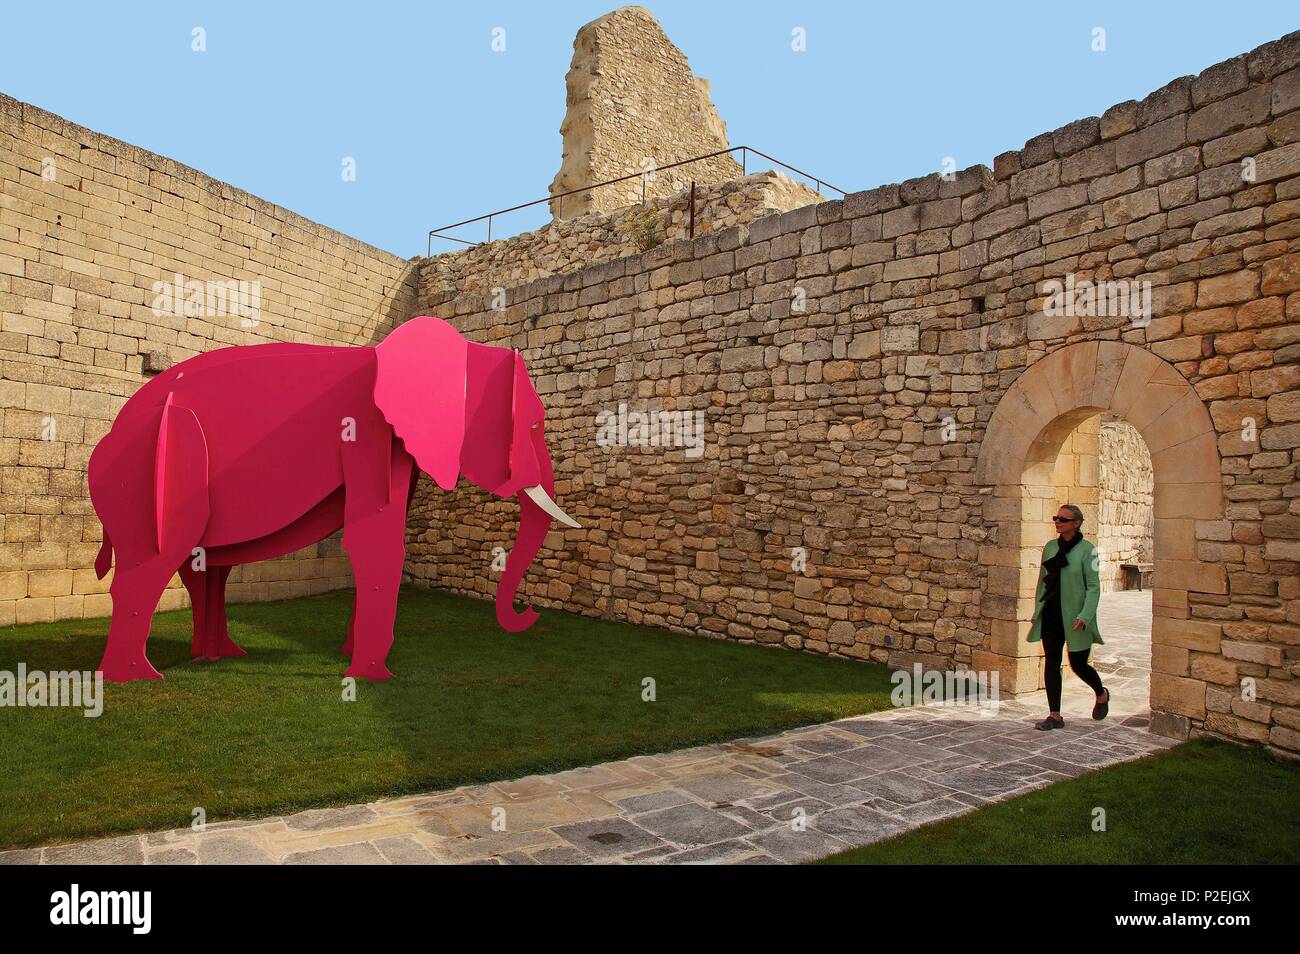 La France, Vaucluse, Luberon, Lacoste, l'éléphant rose métal produit par l'artiste Pierre Rault dans la cour du château de Sade Banque D'Images